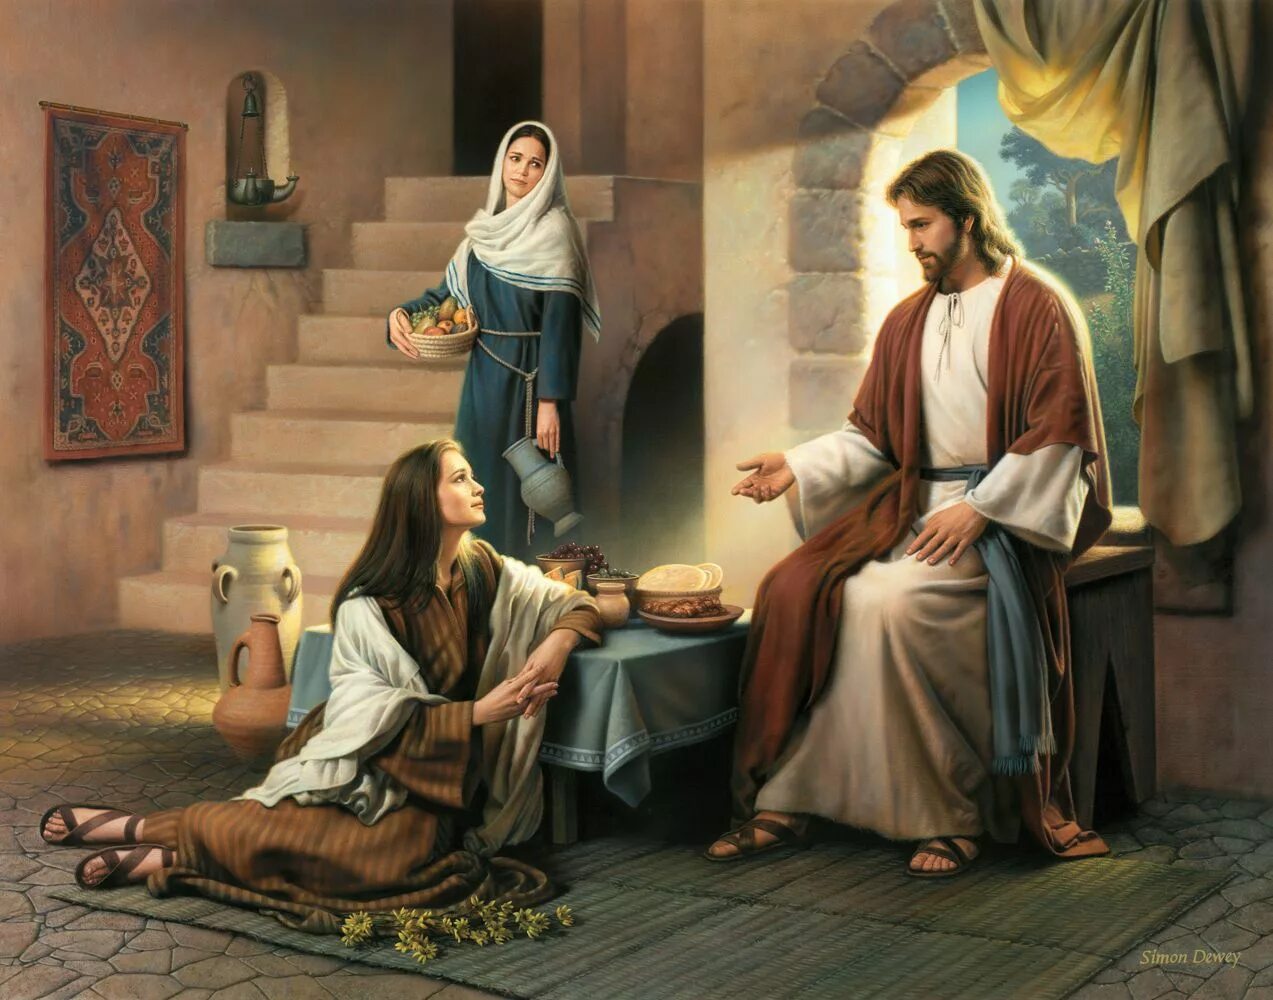 Христос у Марфы и Марии. Фреска Христос в доме Марфы и Марии. Притча гость